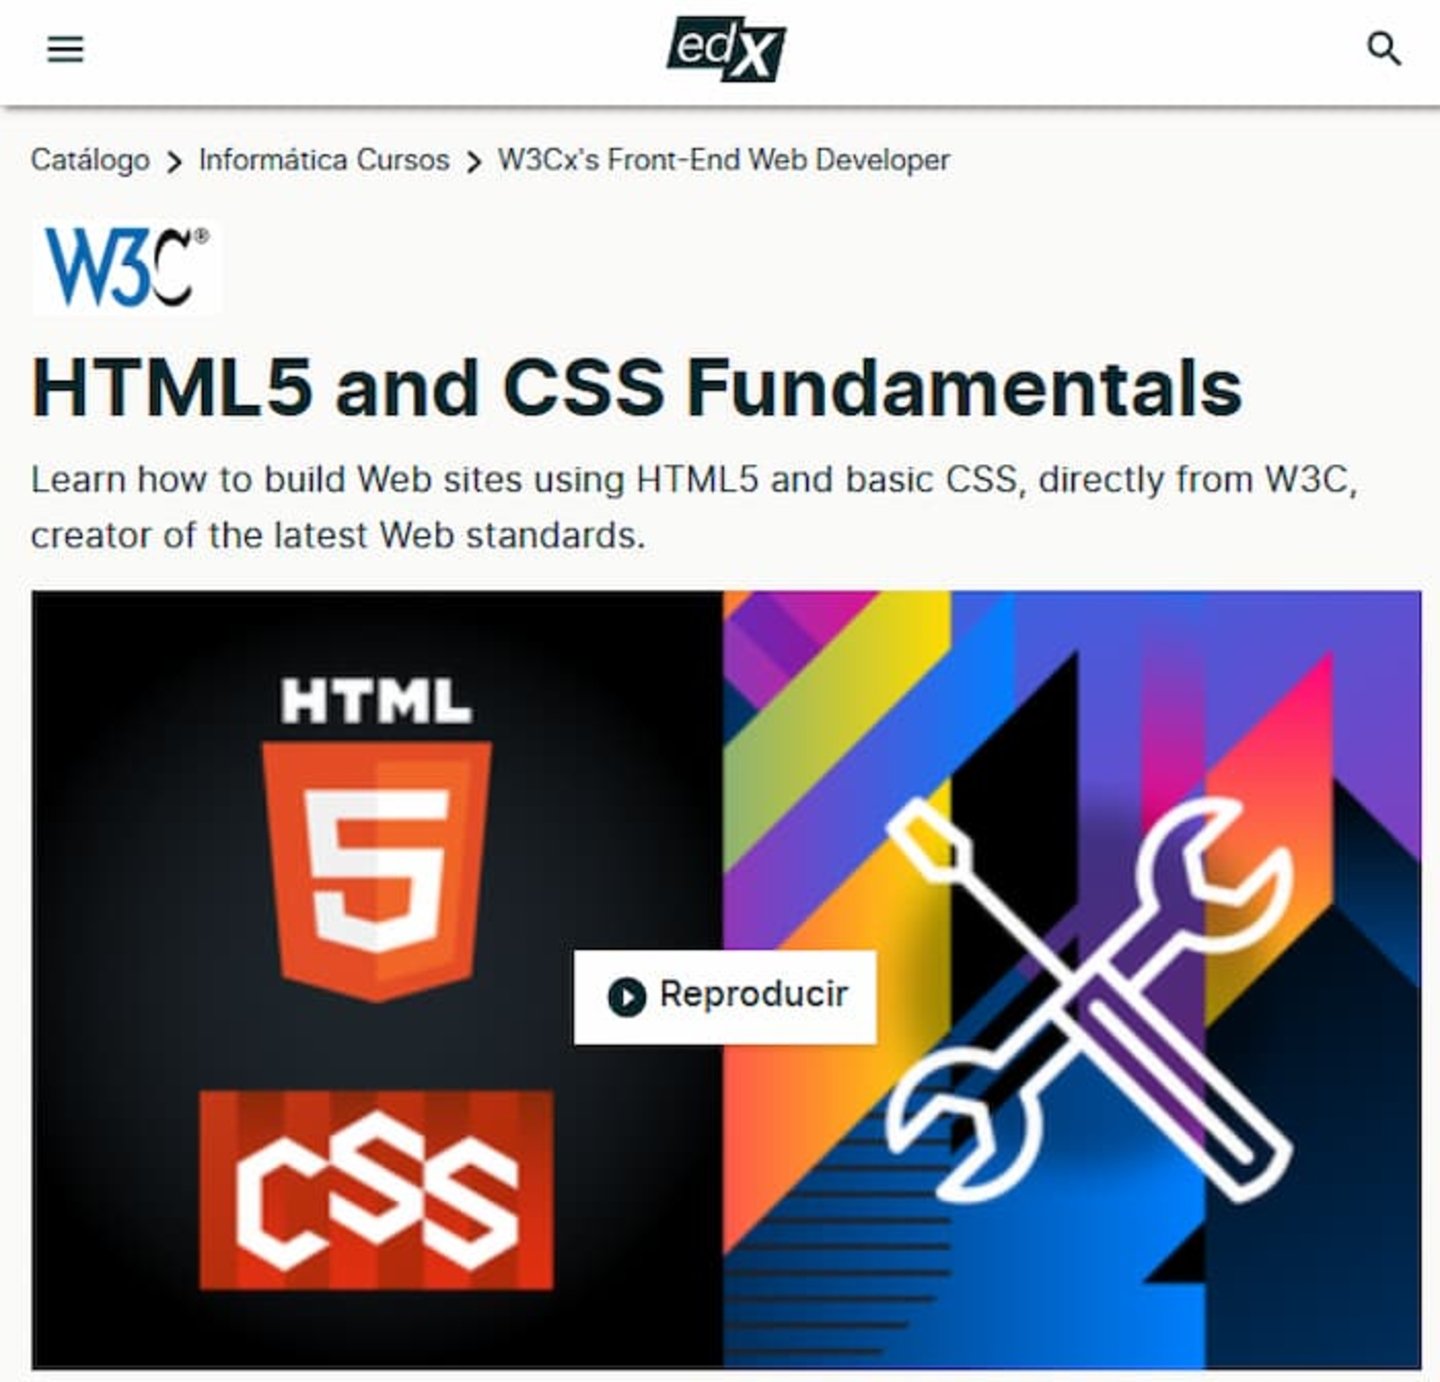 Como su nombre lo indica, este es un curso diseñado para aprender los fundamentos básicos de HTML y CSS, importantes para el desarrollo web